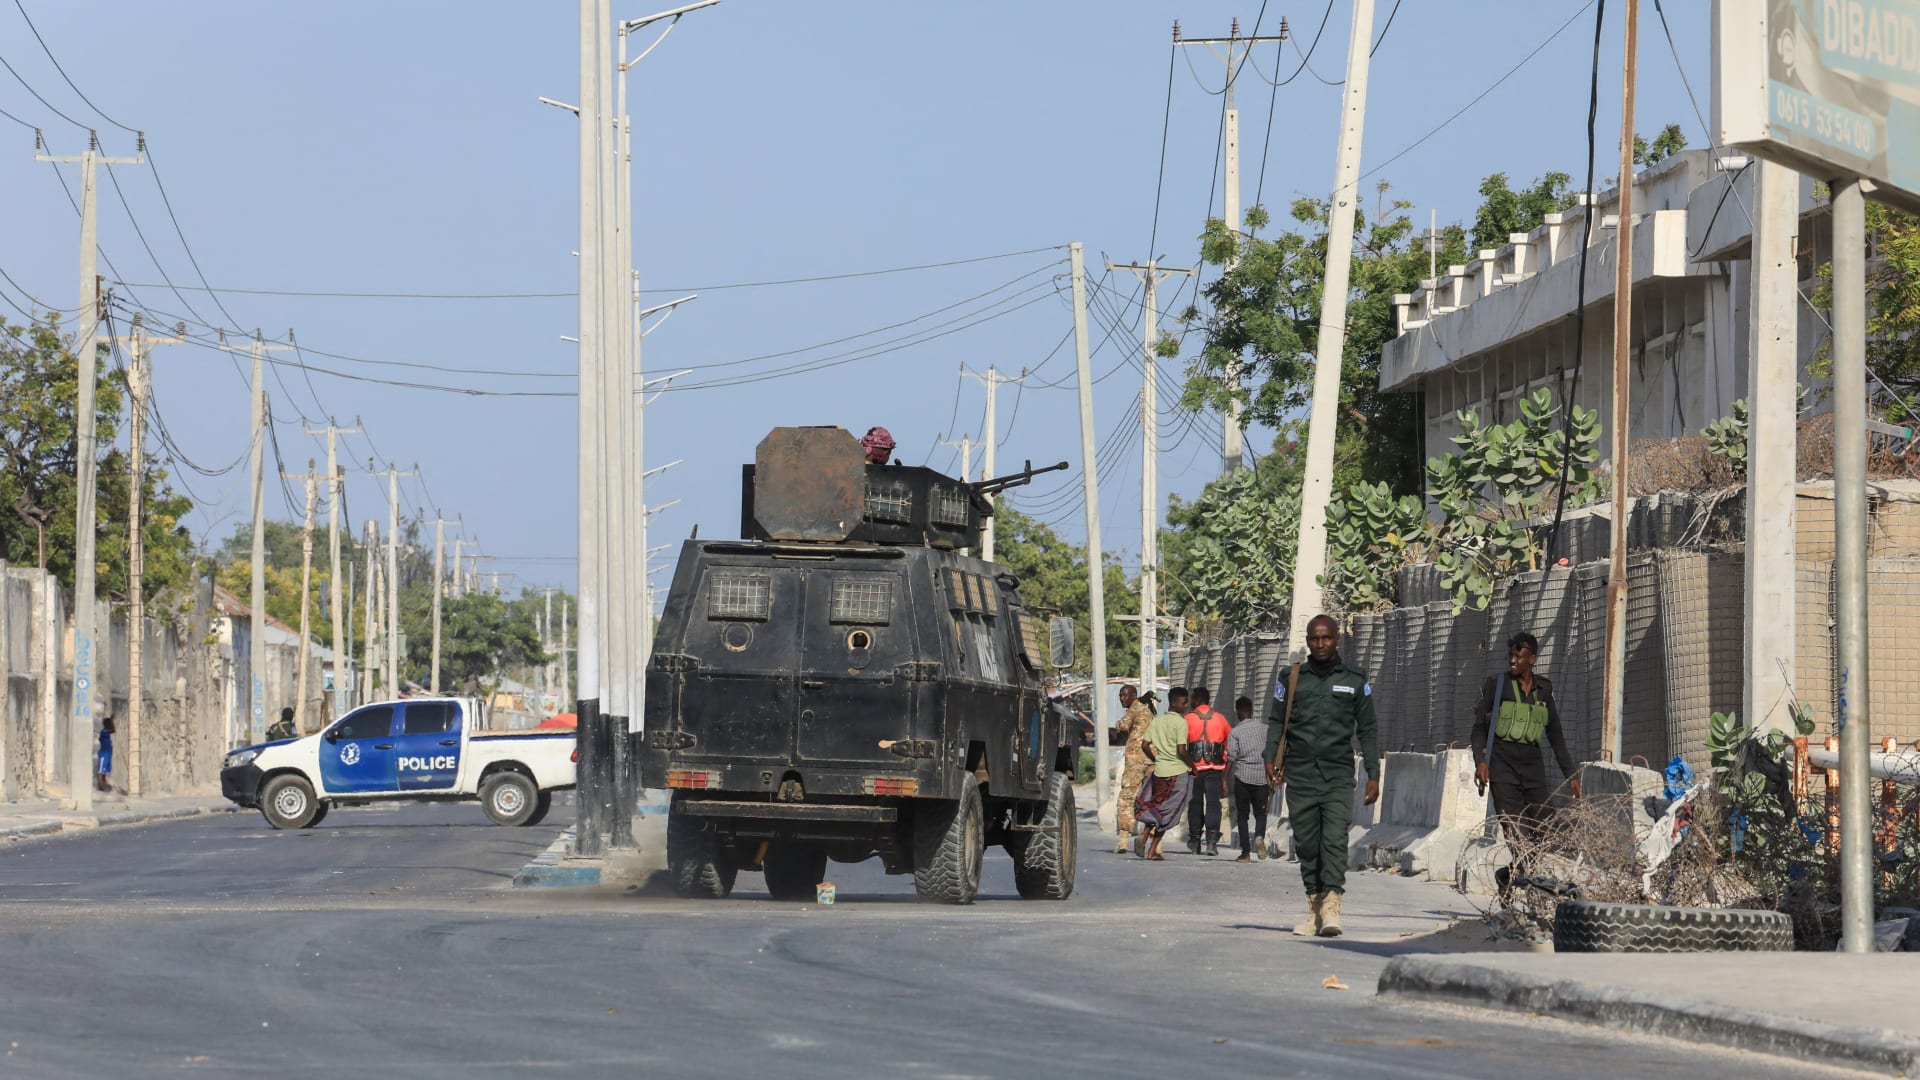 ماذا نعلم عن هجوم حركة "الشباب" على قاعدة الاتحاد الإفريقي في الصومال؟